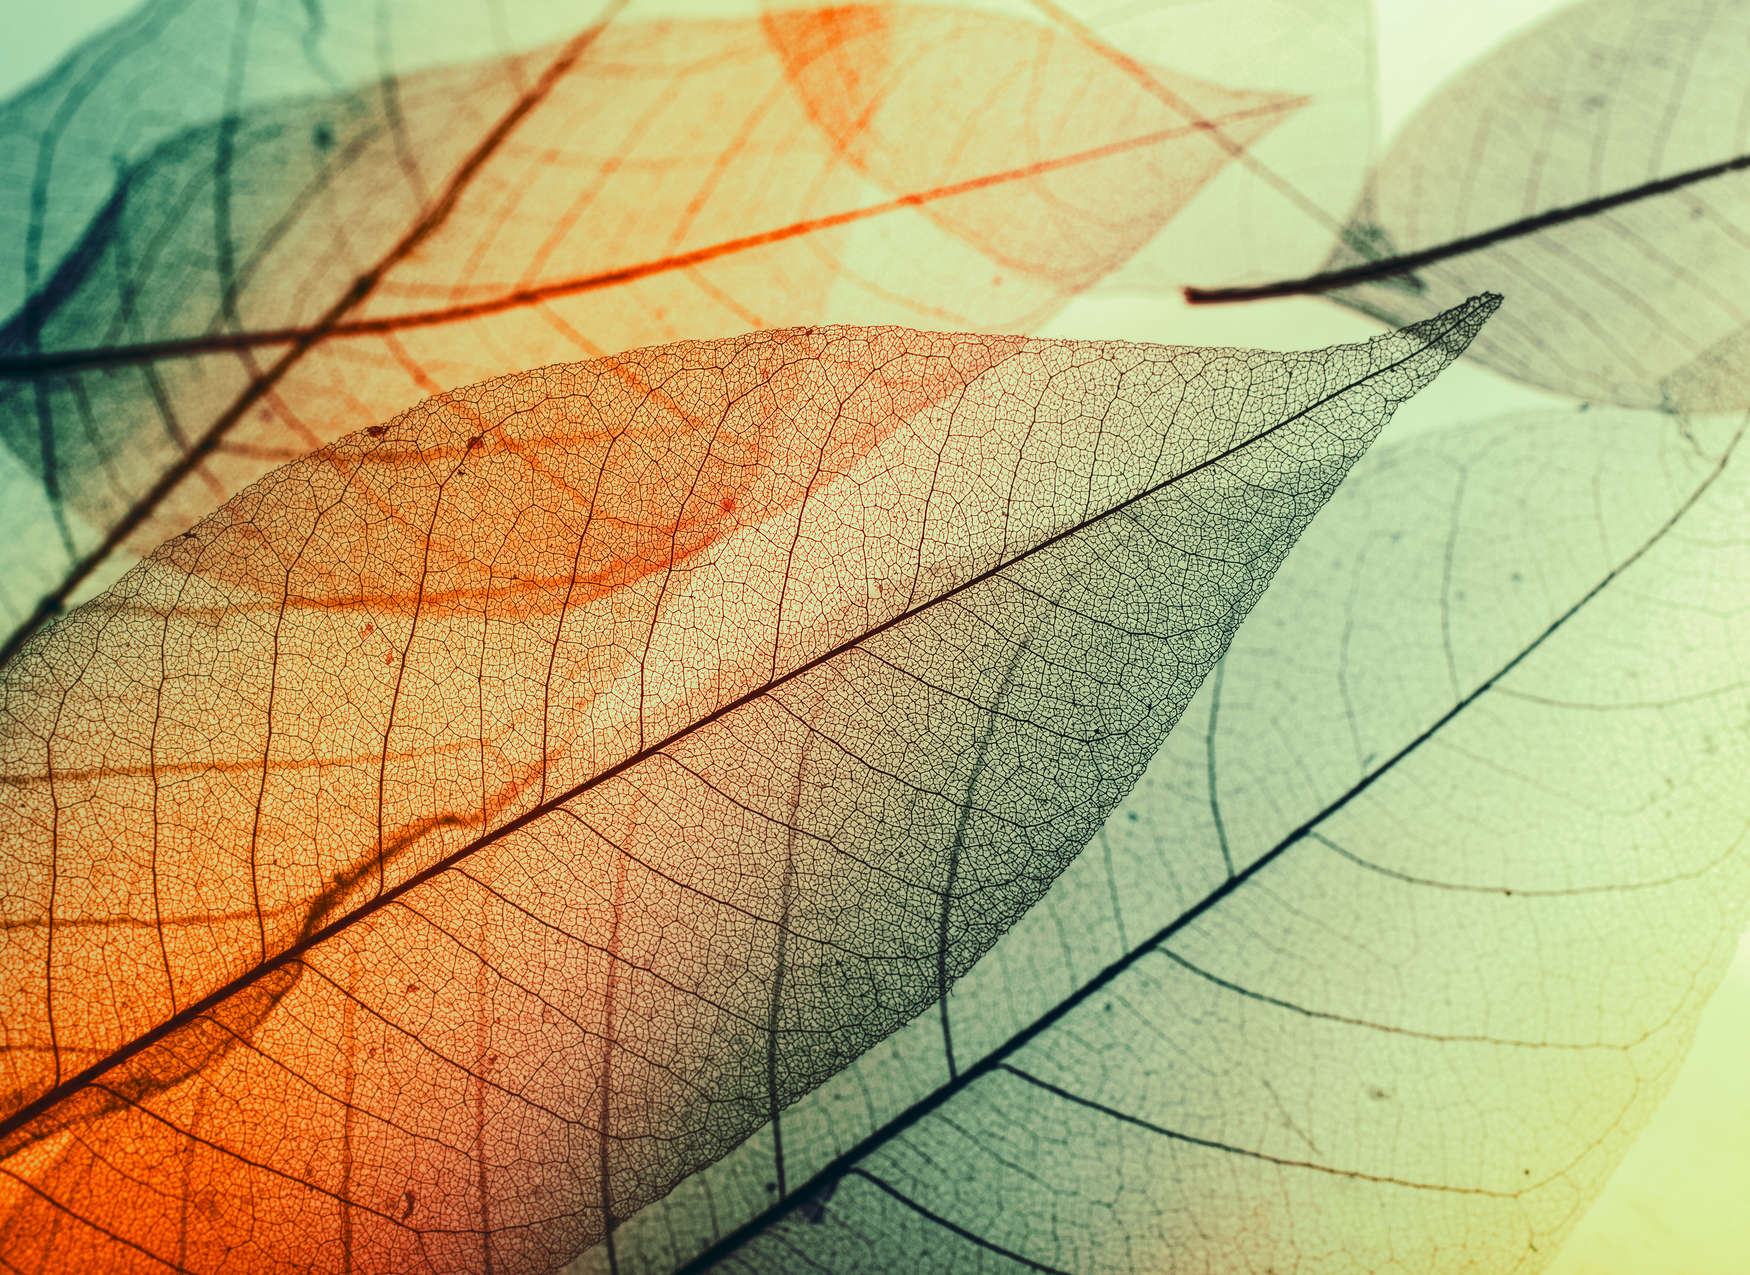             Papier peint à motif de feuilles - vert, orange, noir
        